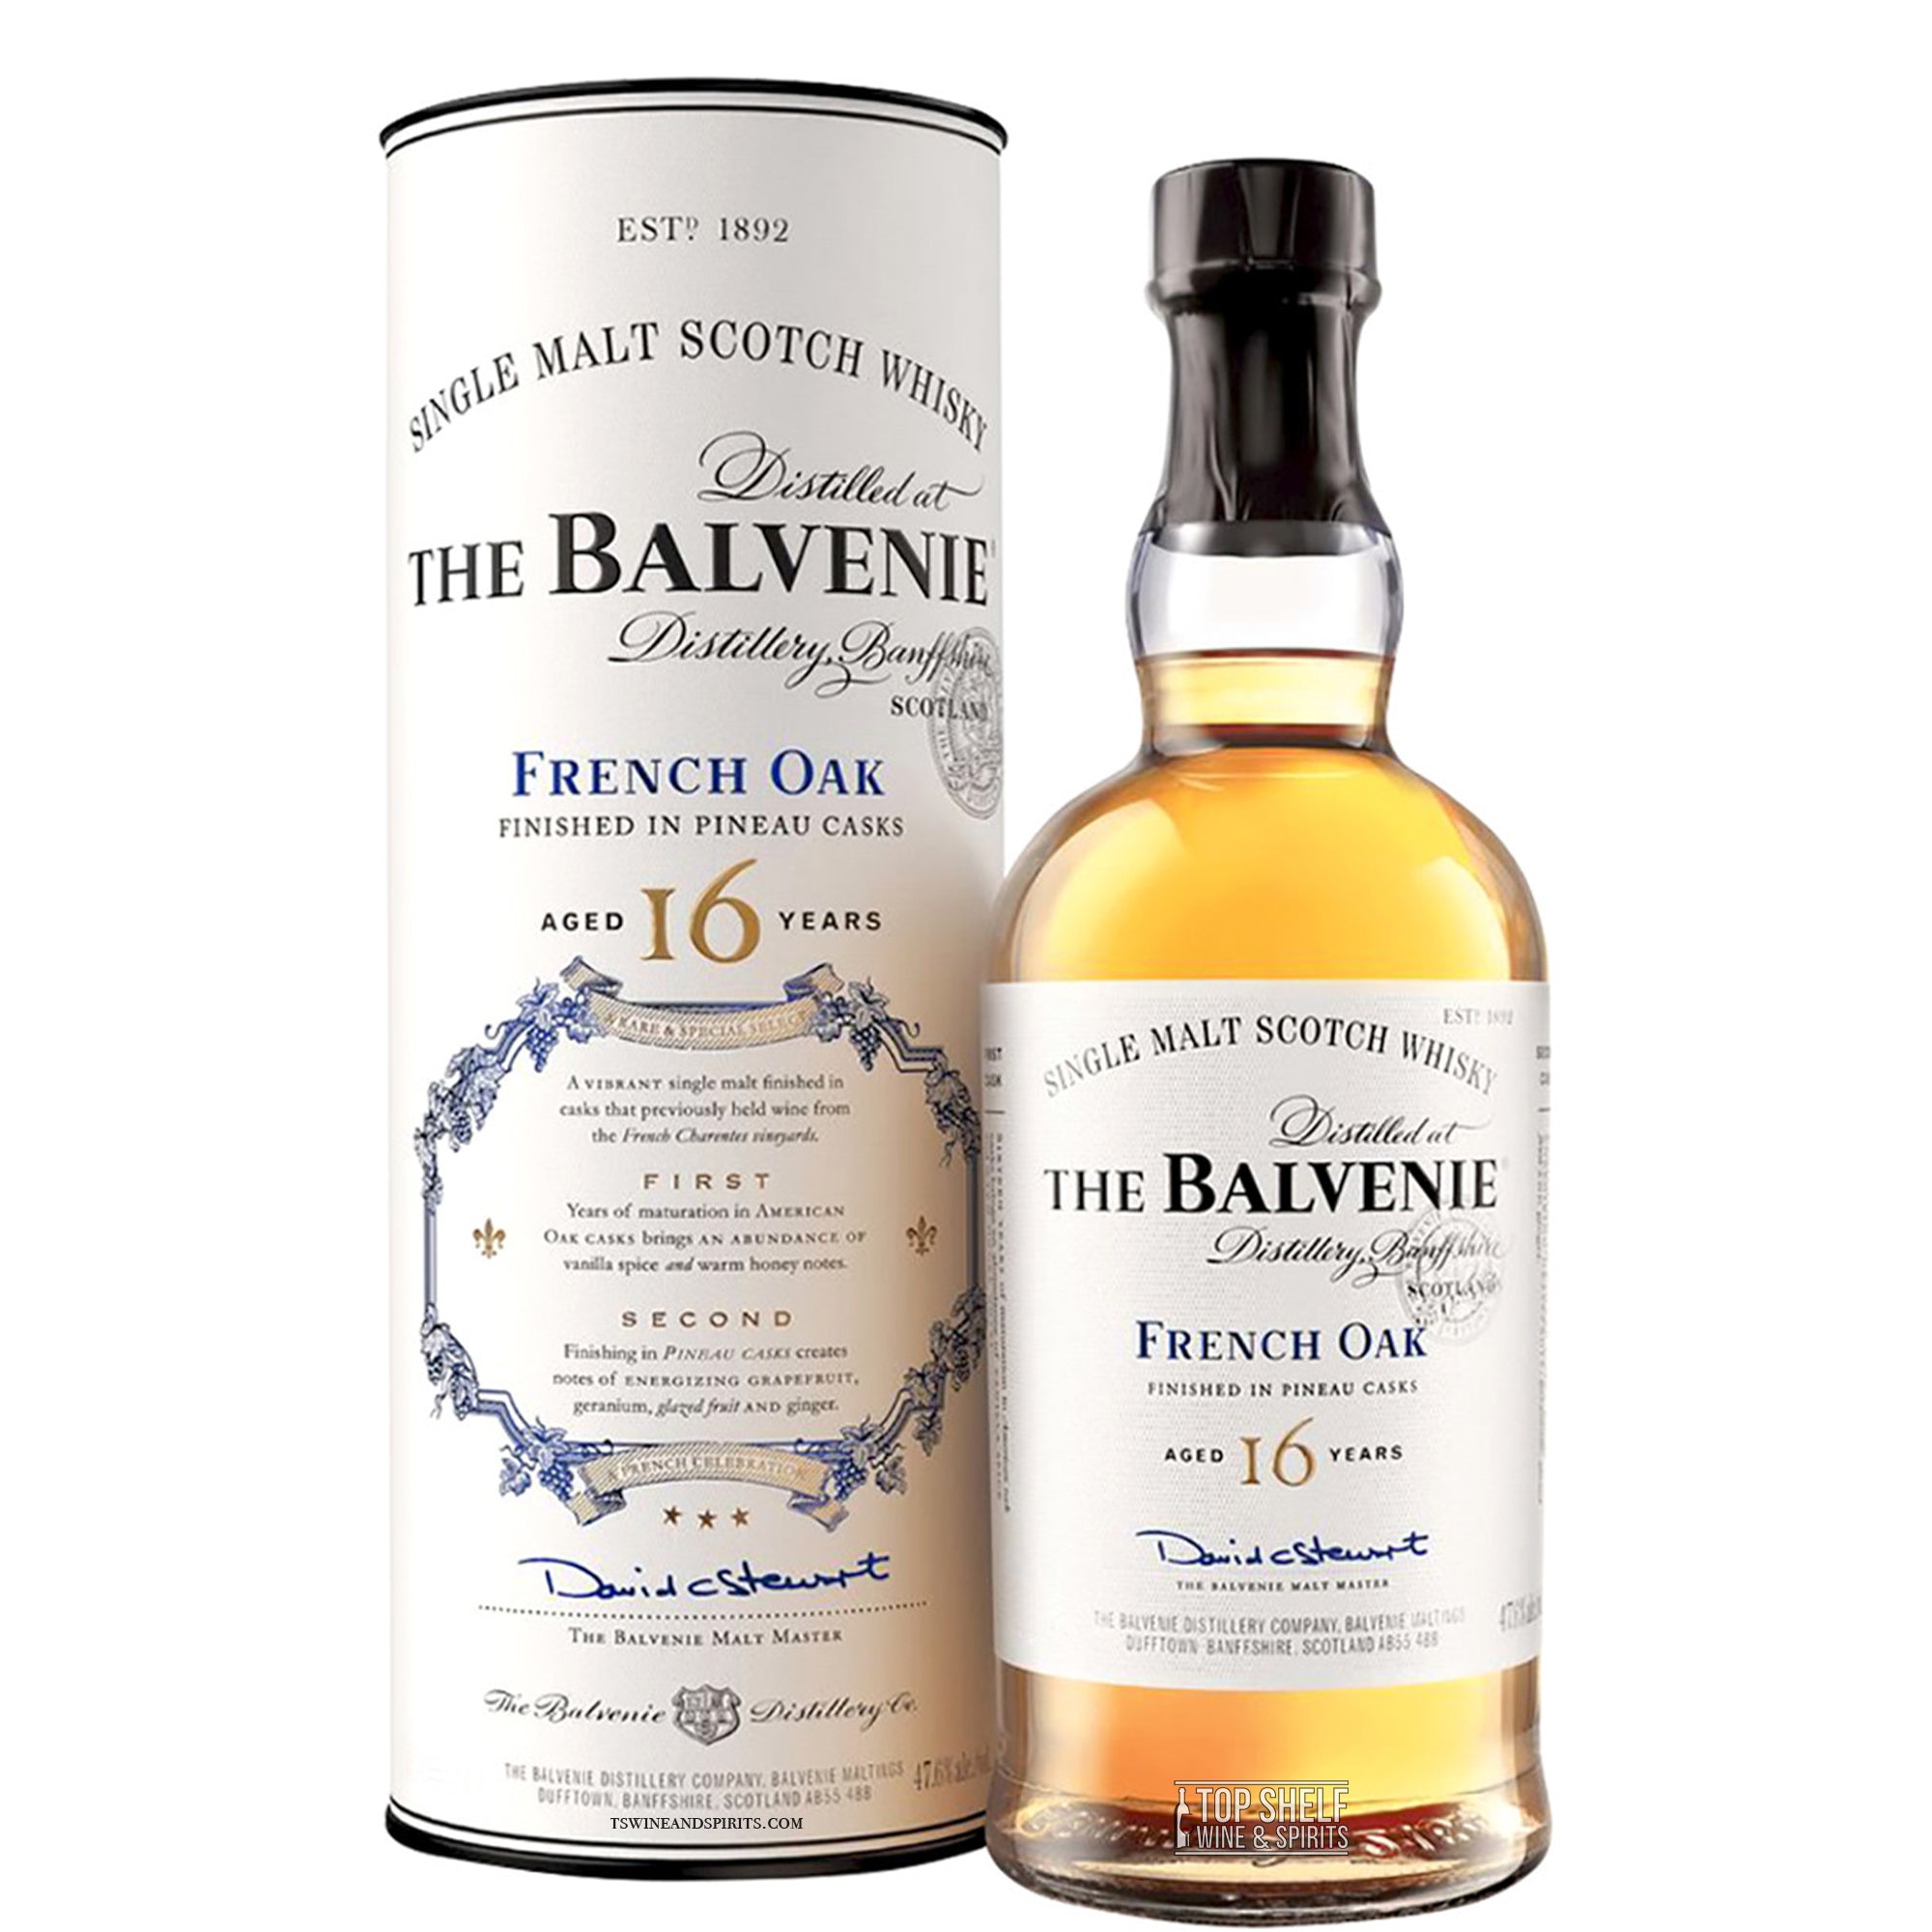 The Balvenie French Oak 16 Scotch Whisky